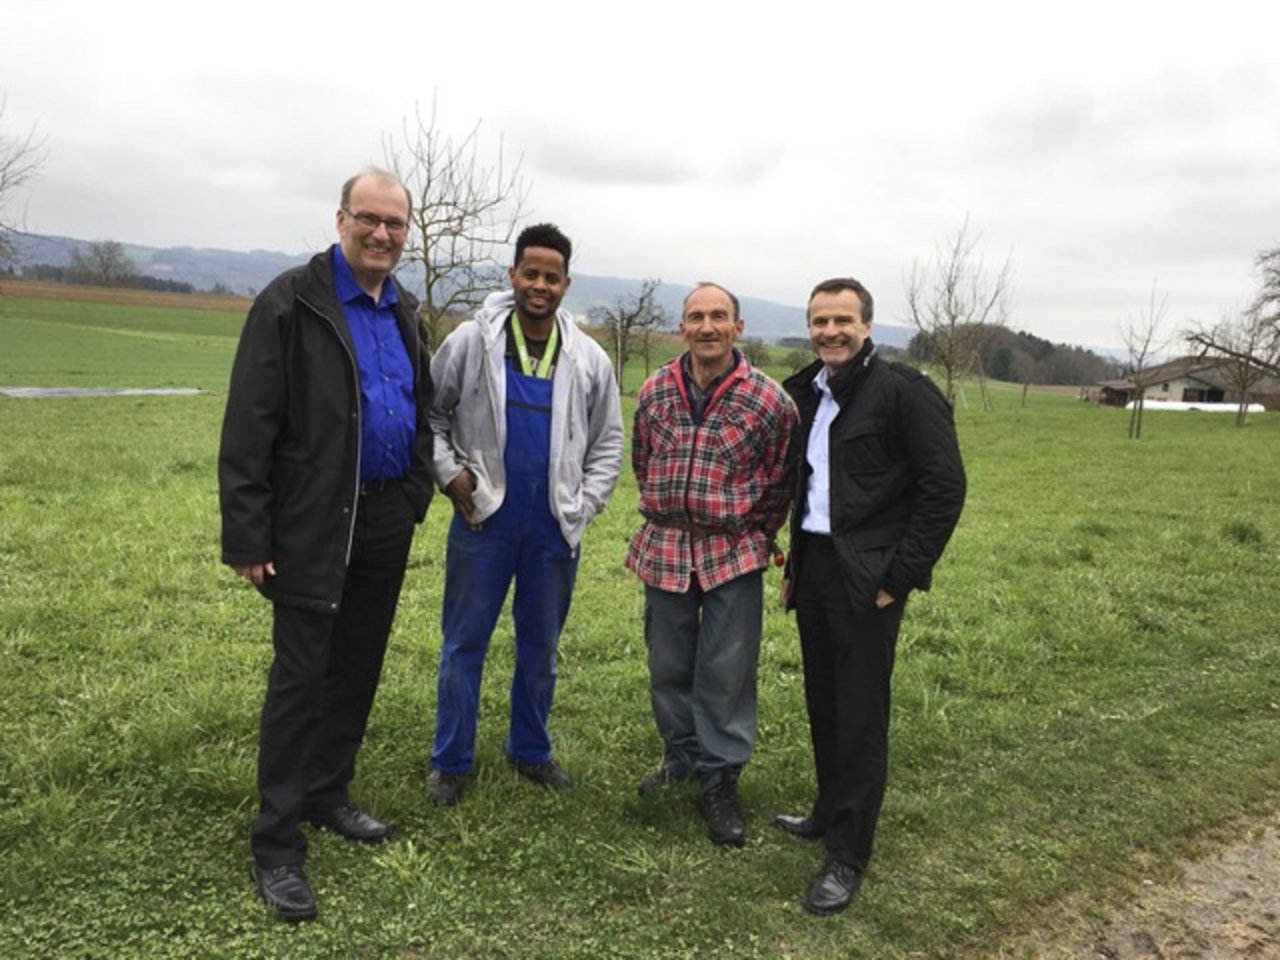 Markus Ritter (SBV-Präsident), Tesfu Adhanom (auszubildender Agrarpraktiker), Markus Ramser (Betriebsleiter) und Urs Schneider (stv. Direktor SBV) auf dem Hof im Kanton Thurgau. (Bild SBV)